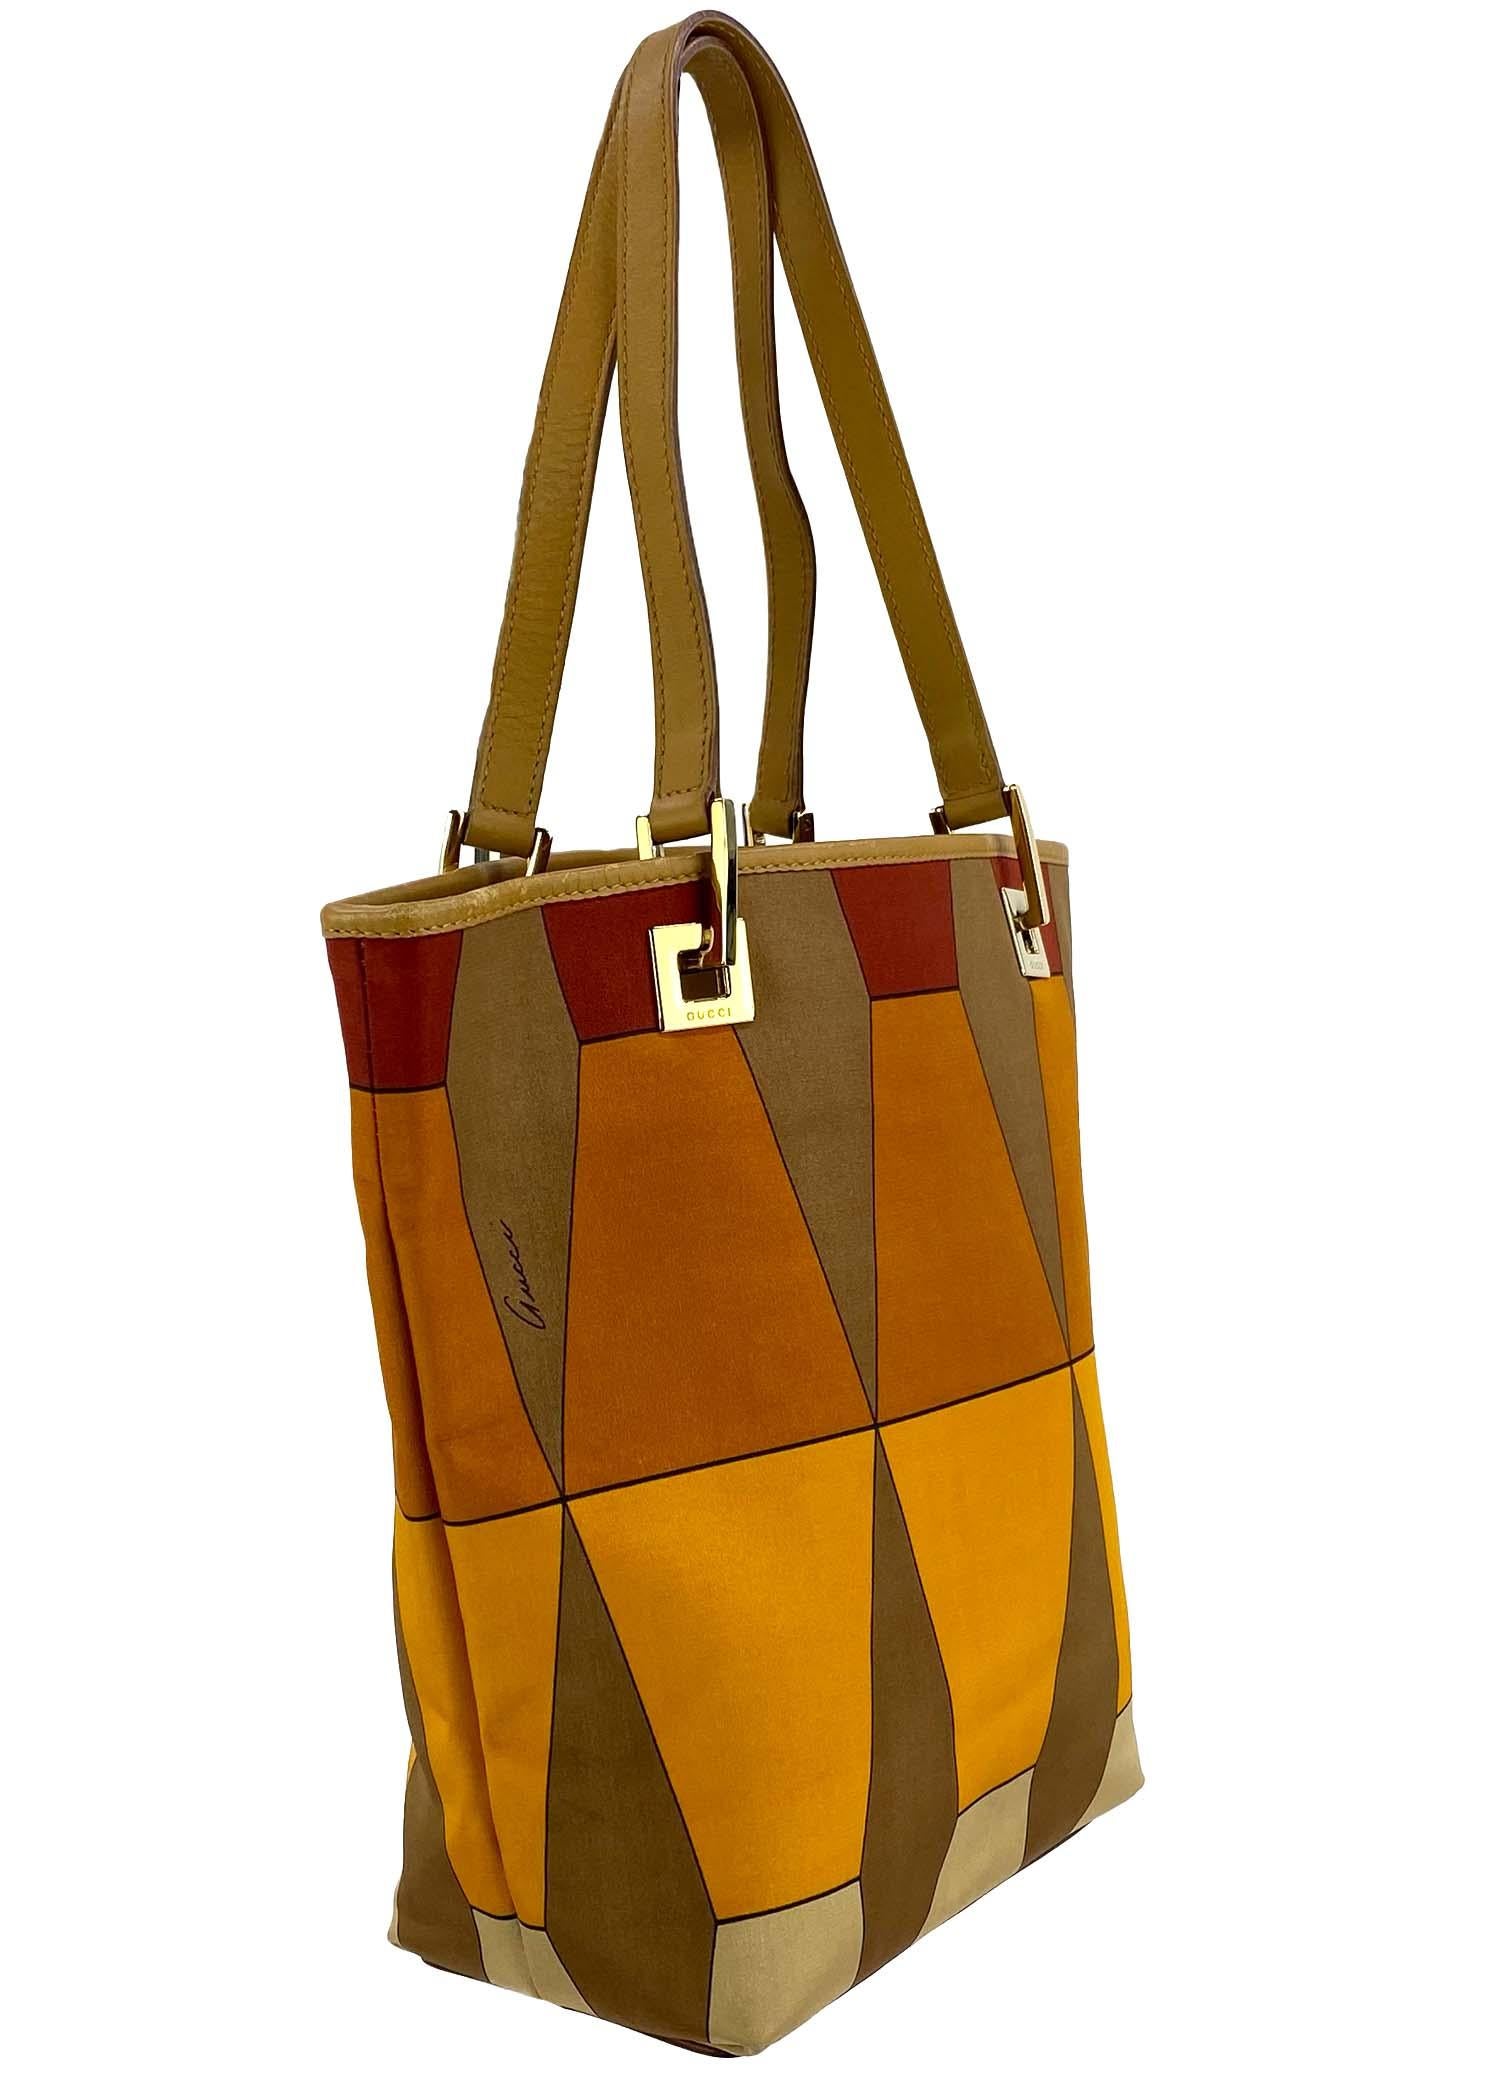 Wir präsentieren eine Gucci-Tasche mit hellbraunem Jacquardmuster, entworfen von Tom Ford. Diese schöne, zierliche Tasche ist Teil der F/W 2000-Kollektion, die sich durch eine ähnliche Farbpalette auszeichnet, die perfekt zu den goldfarbenen